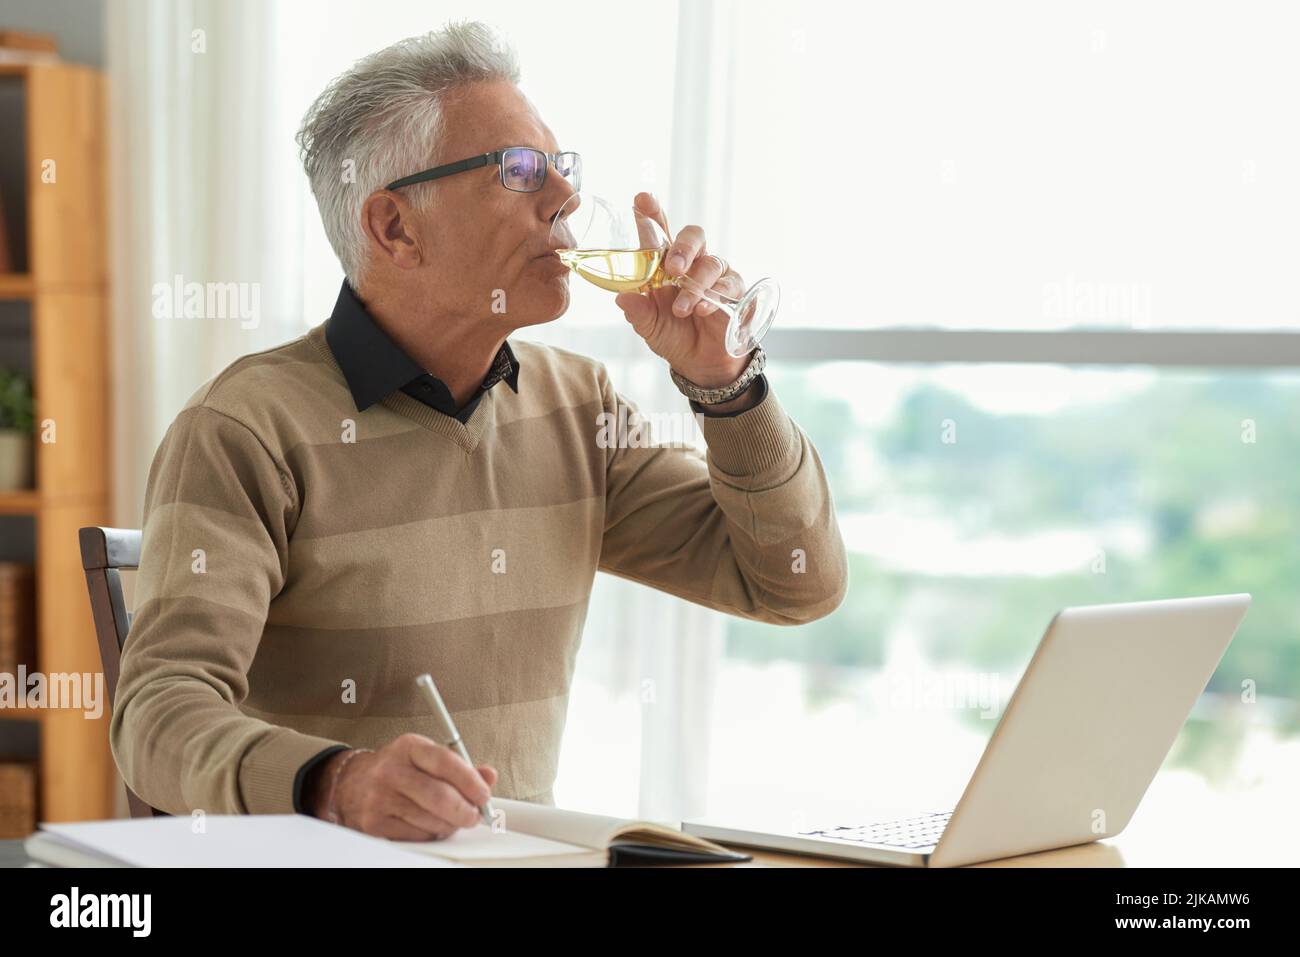 Professioneller Schriftsteller, der bei der Arbeit an einem neuen Roman Wein trinkt Stockfoto